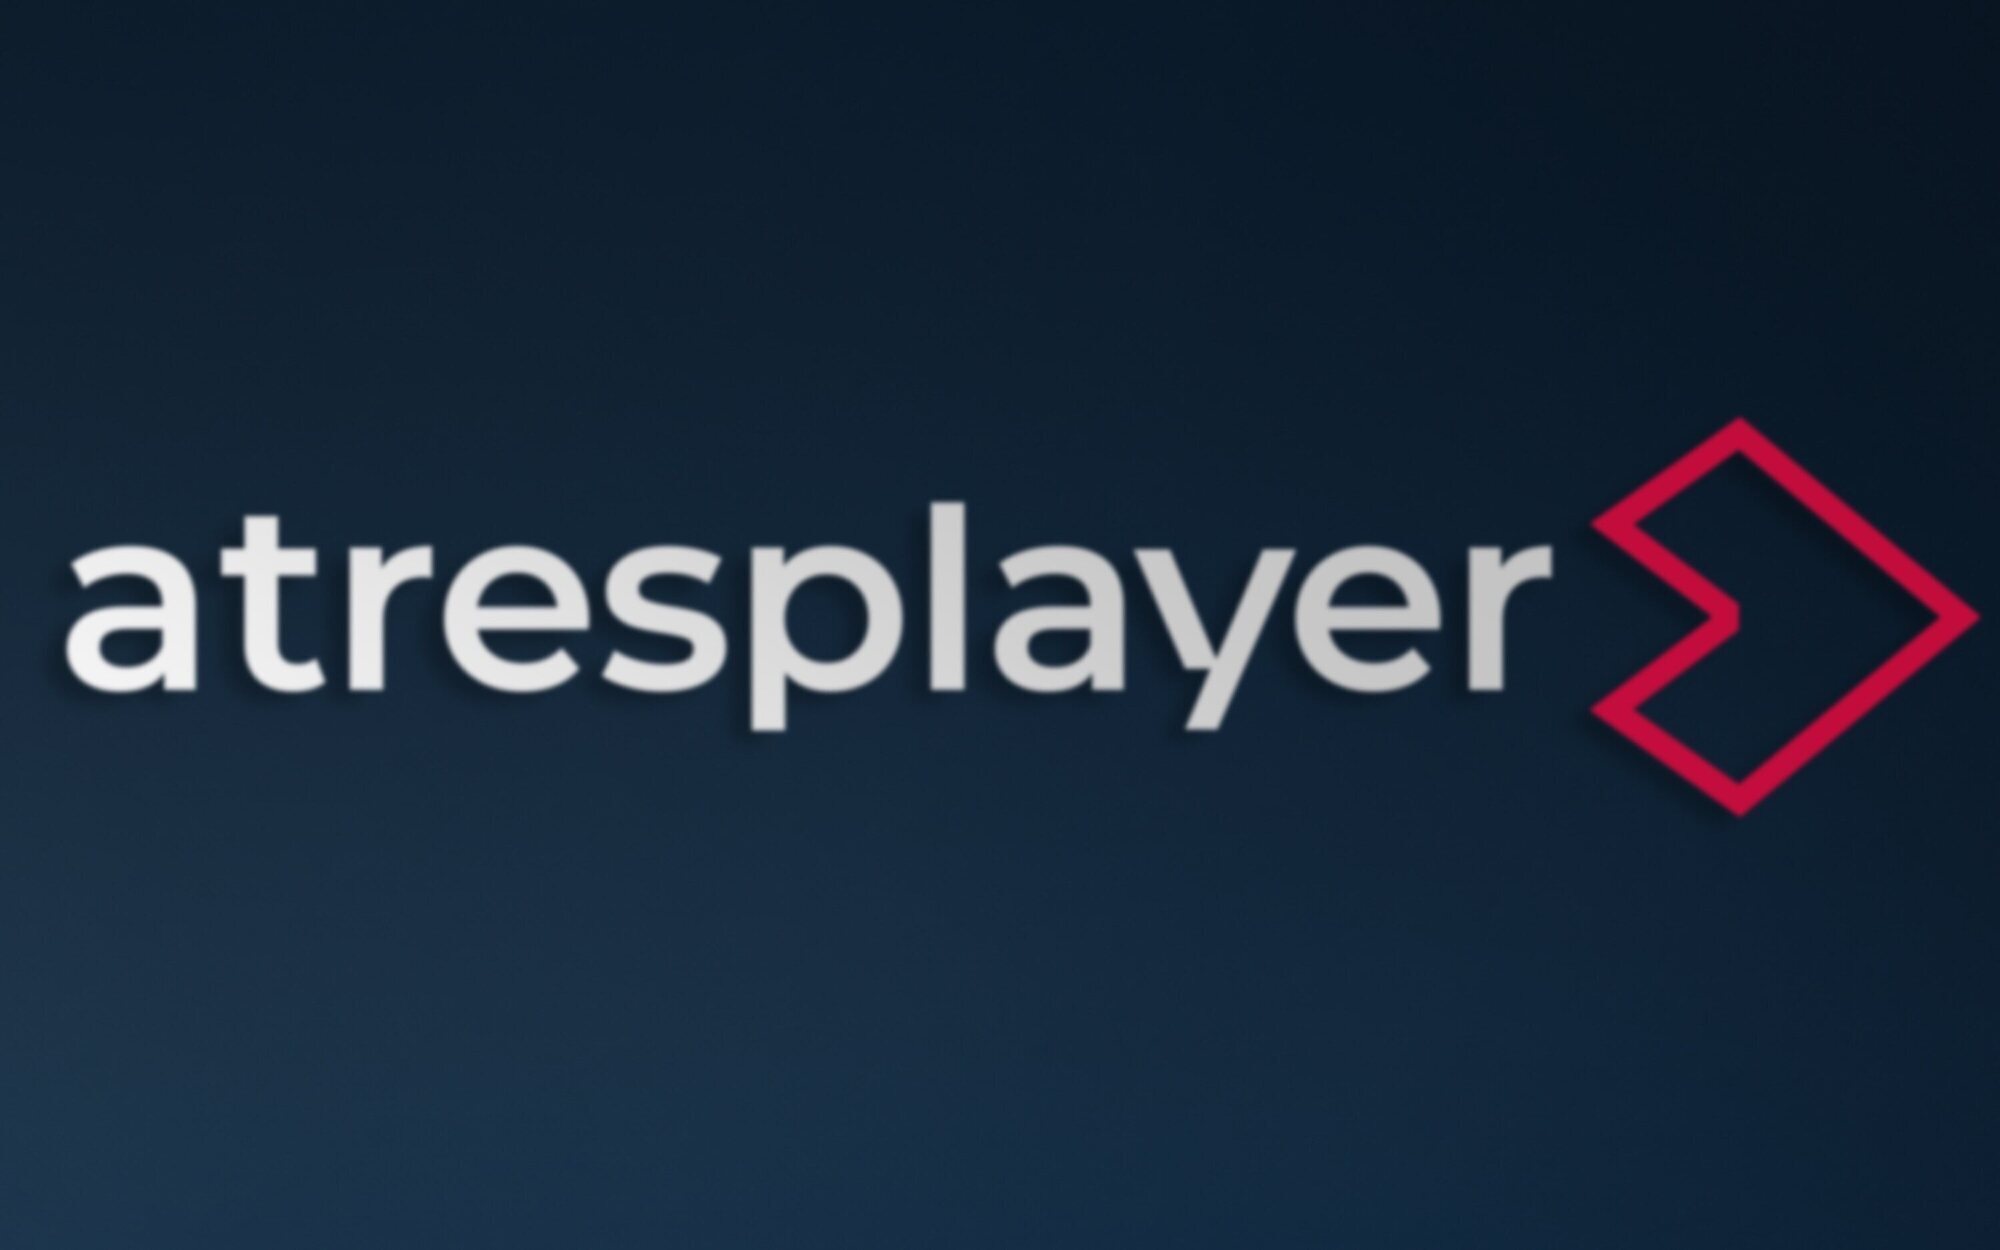 Atresplayer presenta su revolución: Cambio en el nombre, diez nuevos canales y una tarifa familiar